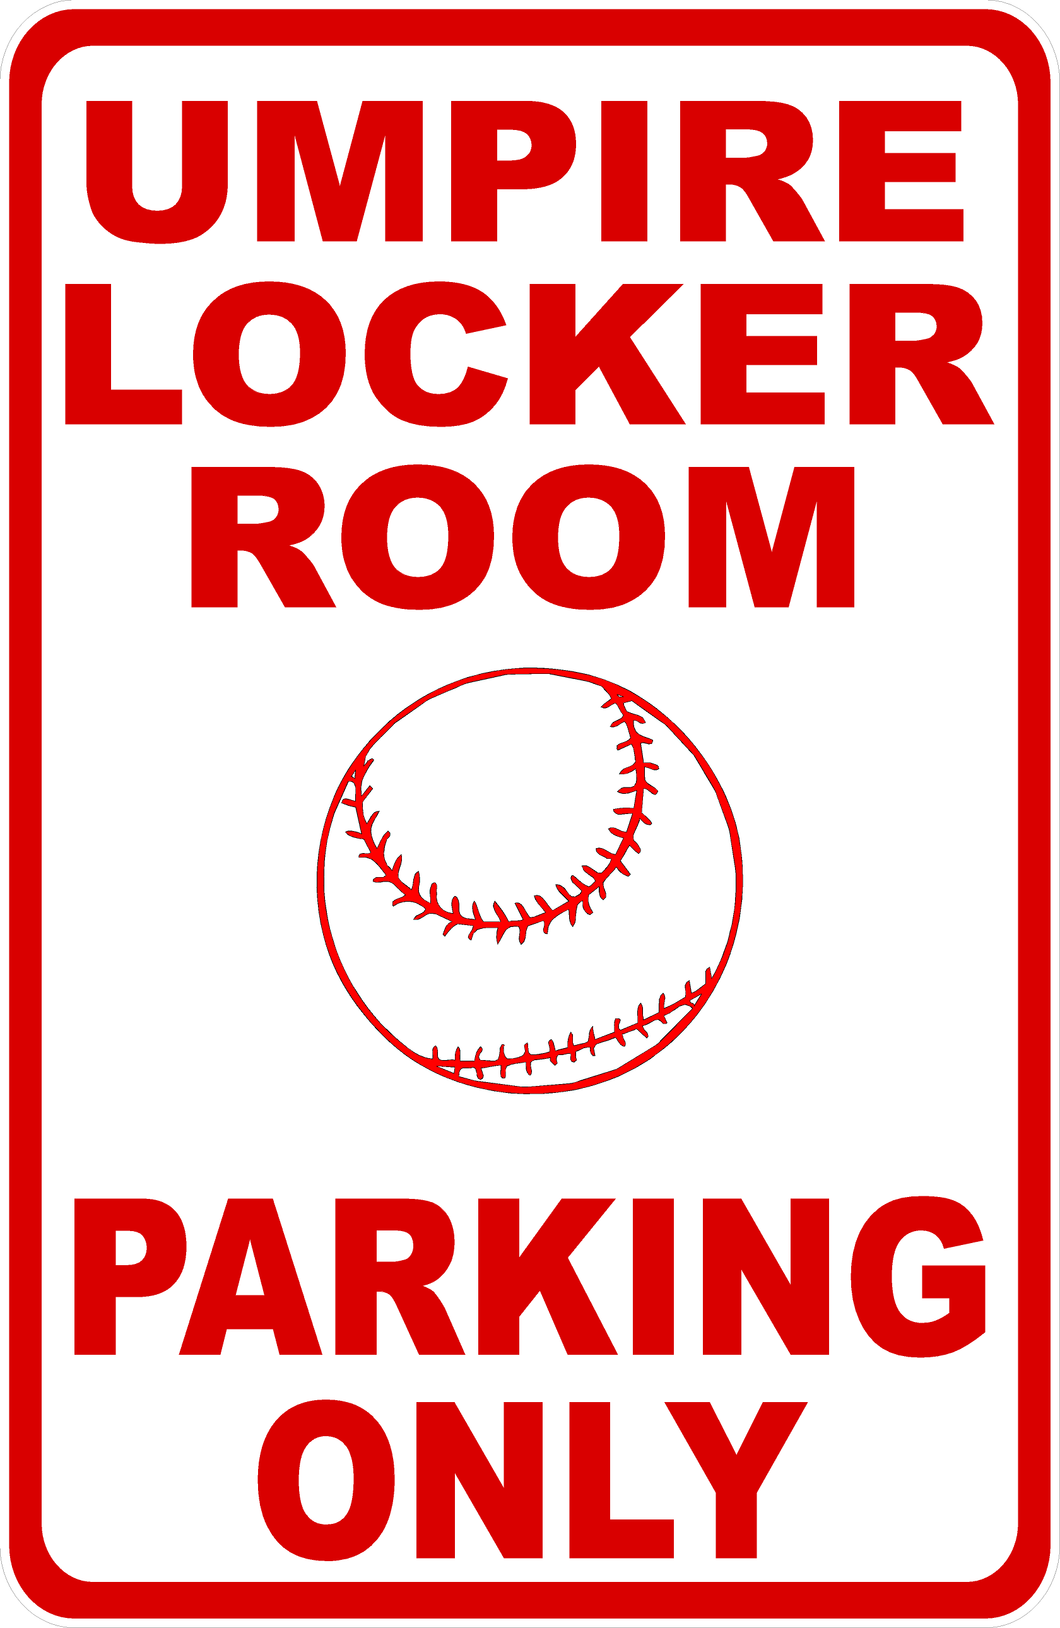 Umpire Locker Room Parking Sign